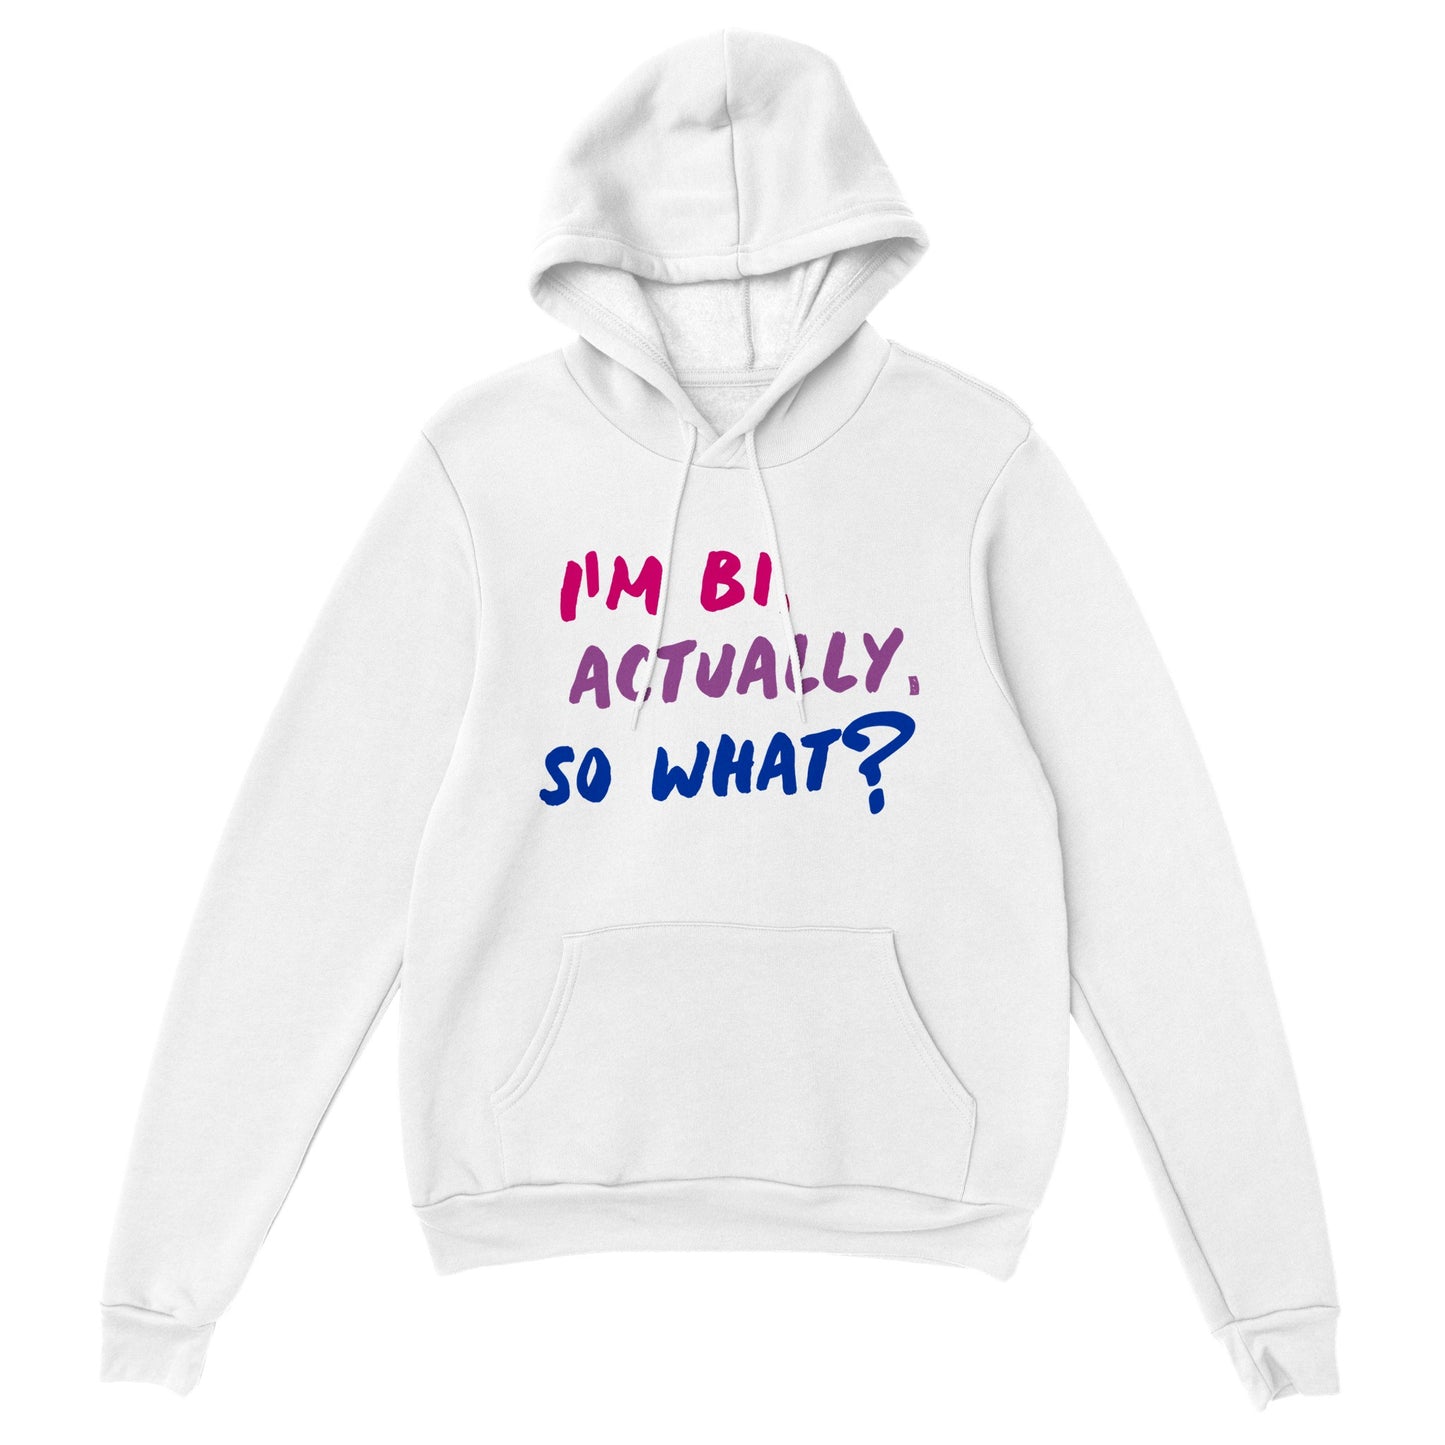 Boldly Proud: 'I'm Bi, So What?' Premium Unisex Pullover Hoodie